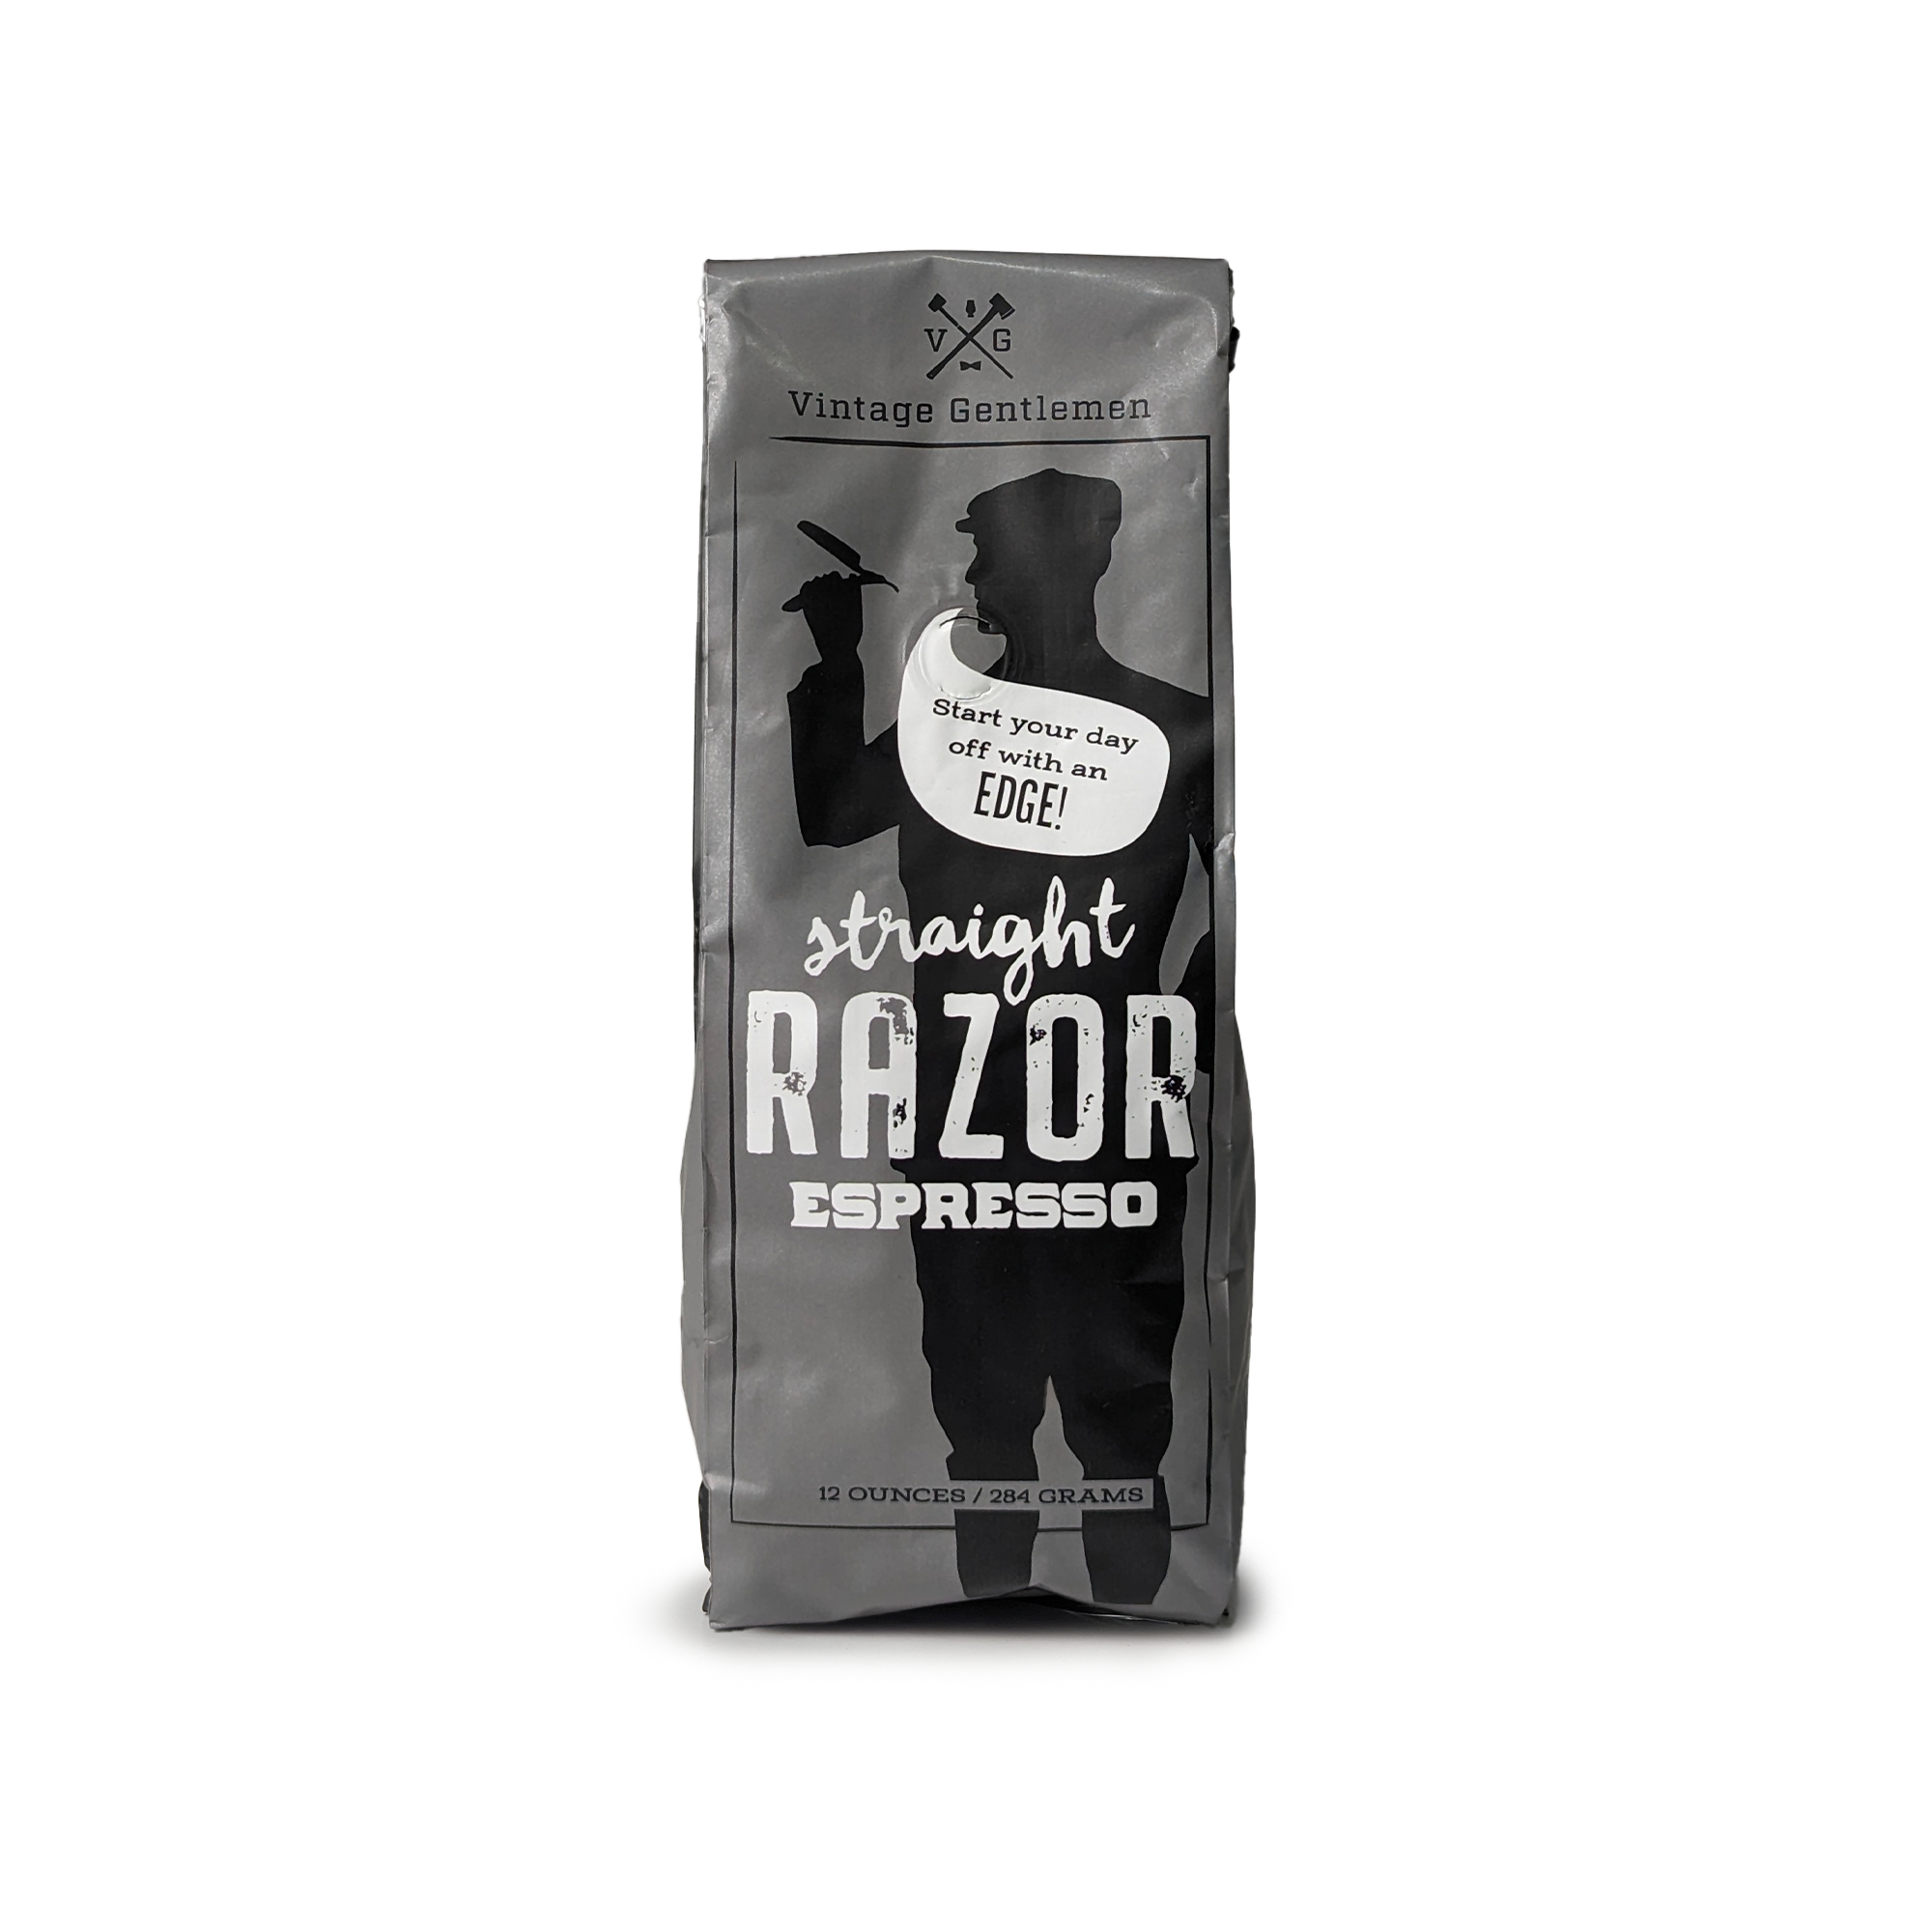 “Straight Razor” Espresso Bean Coffee